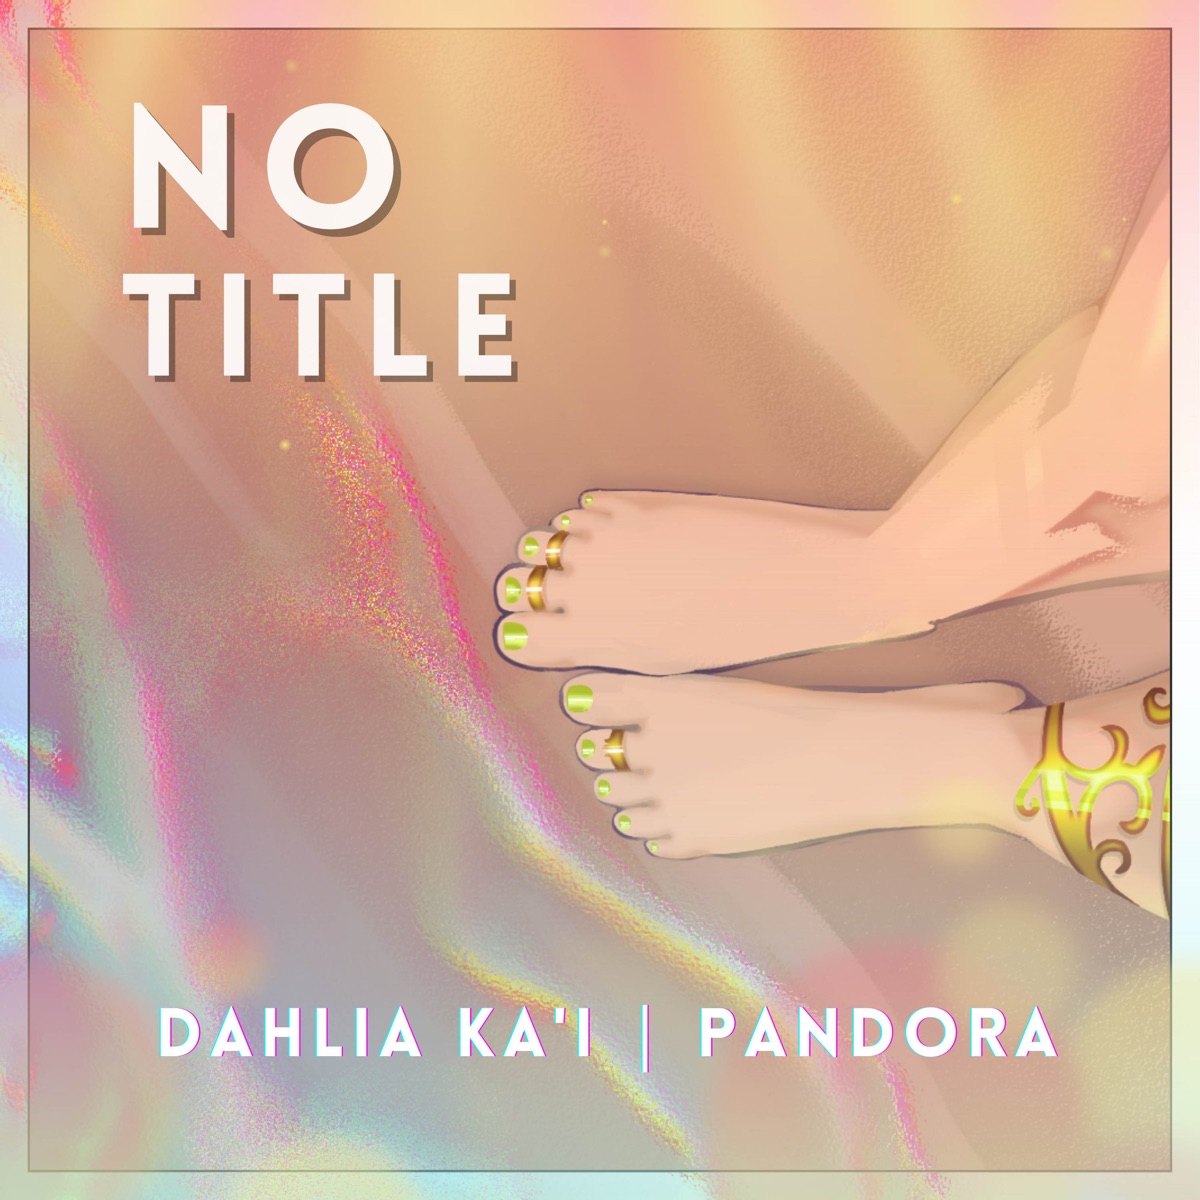 No Title - Single by Dahlia Ka'i & Pandora on Apple Music